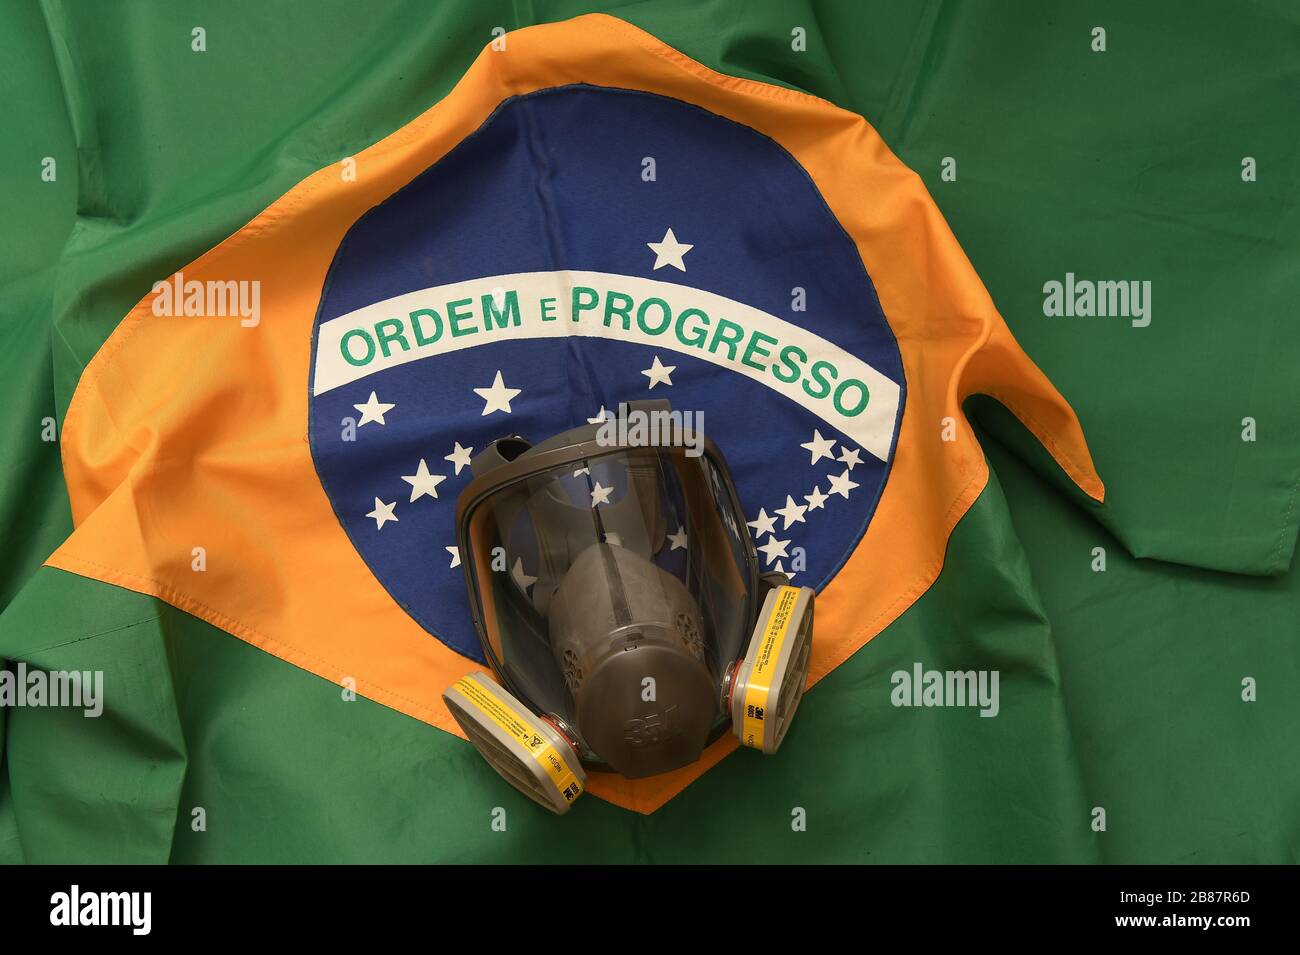 Río de Janeiro, Brasil, 20 de marzo de 2020. Máscara de protección facial contra gases y olores con bandera brasileña en el fondo. Foto de stock